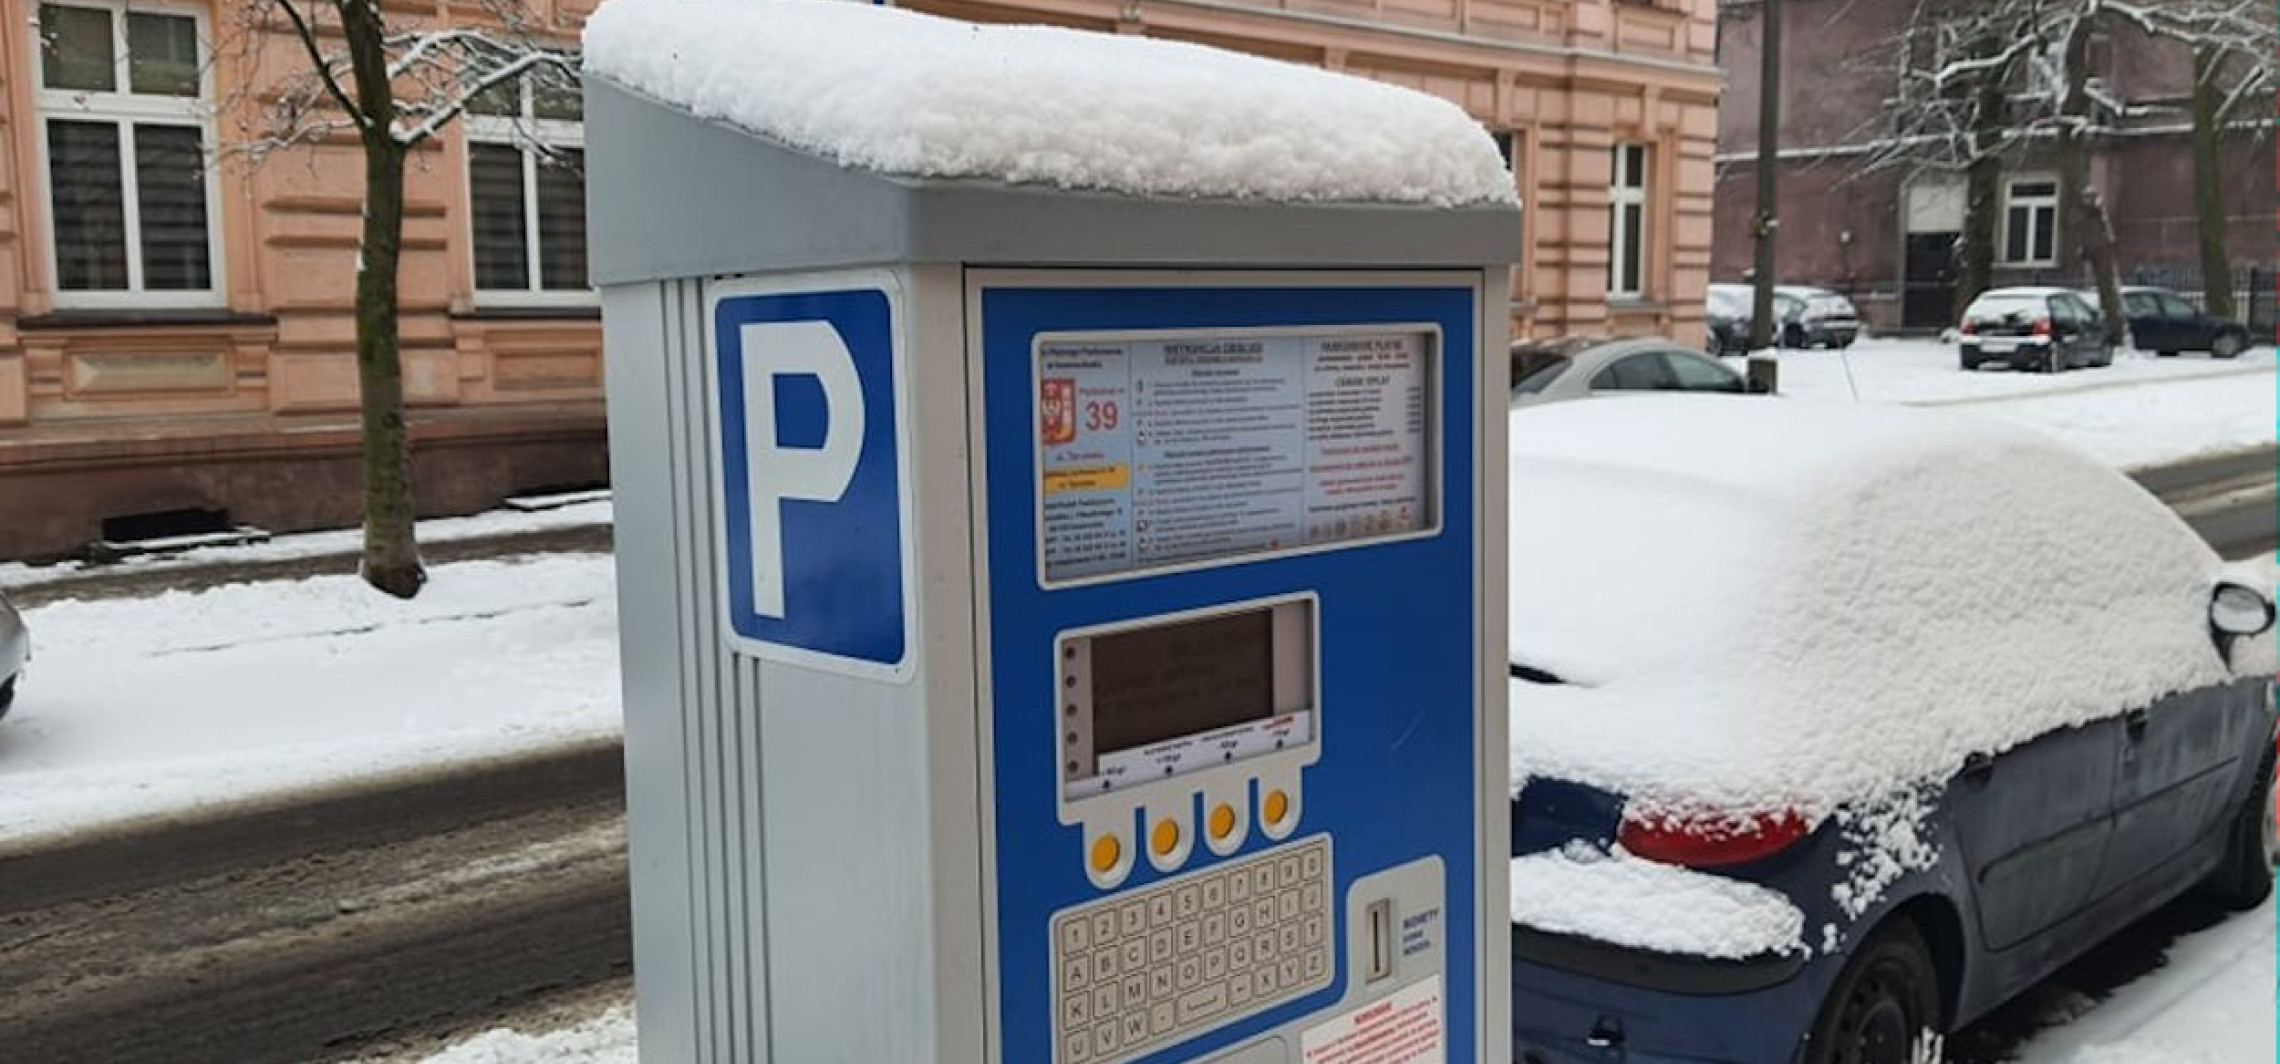 Inowrocław - Będzie droższe parkowanie w Inowrocławiu? Znamy projekt